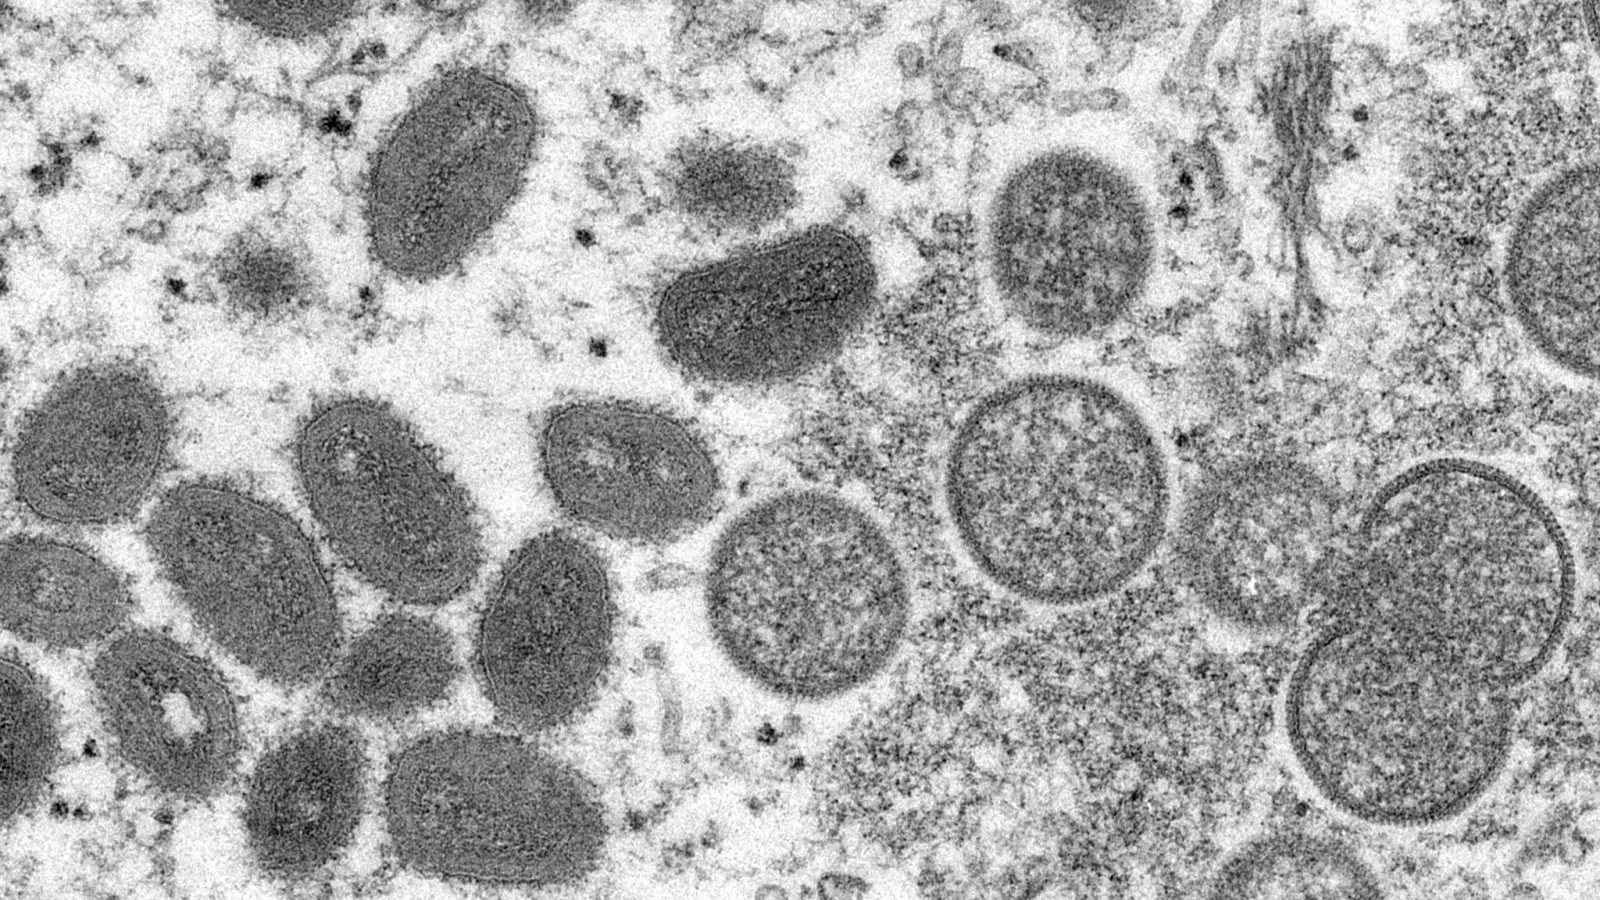 Diese elektronenmikroskopische Aufnahme zeigt reife, ovale Affenpockenviren (l) und kugelförmige unreife Virionen (r). (Foto: Cynthia S. Goldsmith/Russell Regner/CDC/AP/dpa)